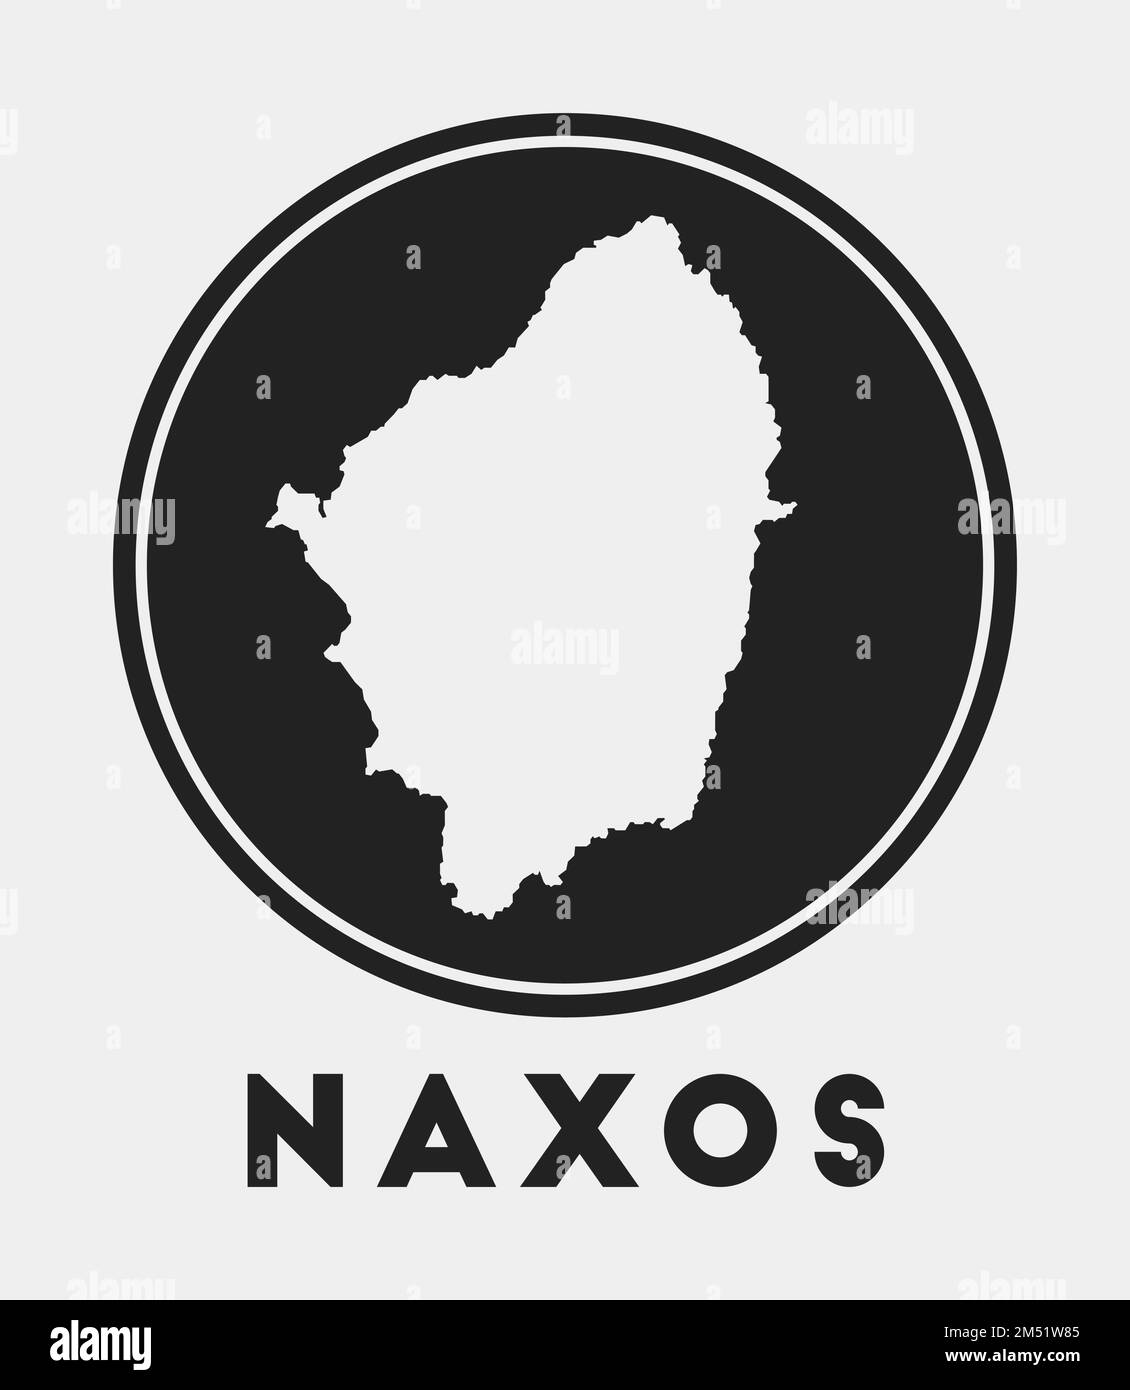 Naxos icon. Round logo with island map and title. Stylish Naxos badge ...